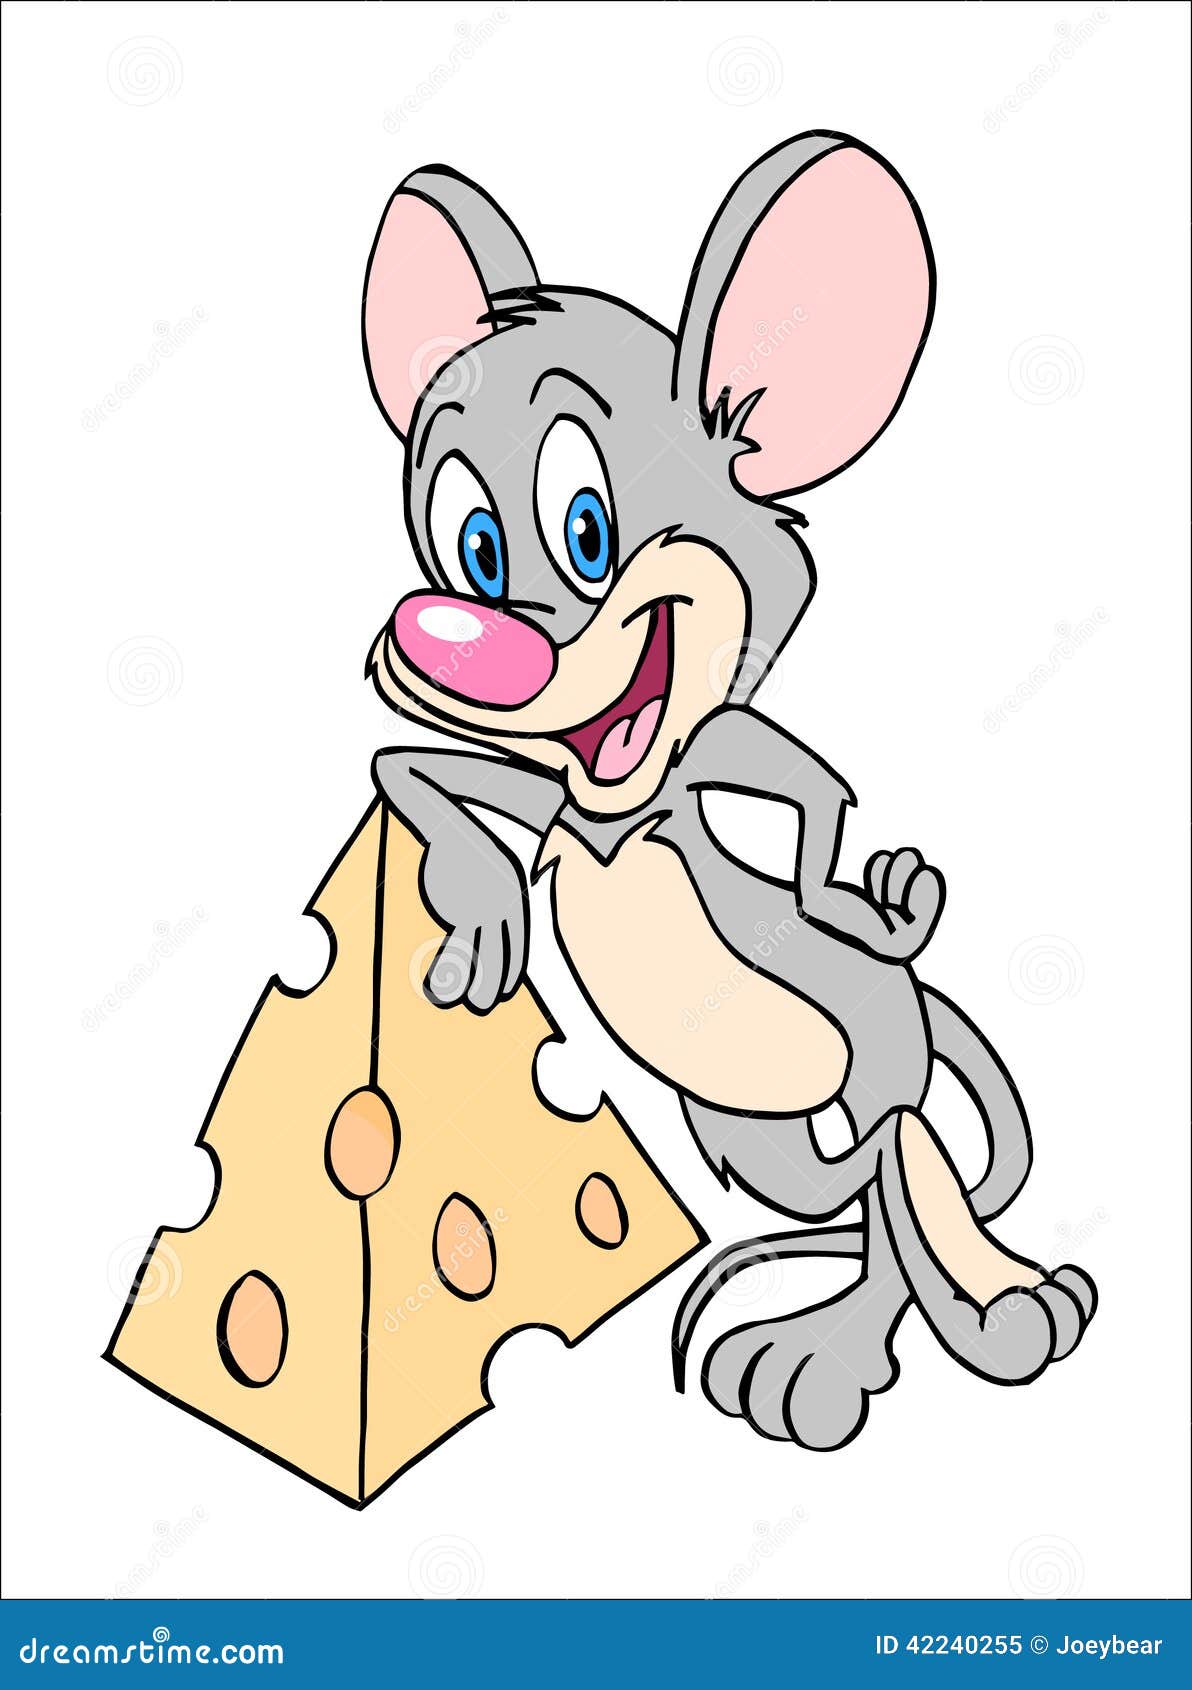 Включи мышонок идет в детский садик. Мышка с сыром. Мышонок карикатура. Мышонок с сыром. Мышка шарж.